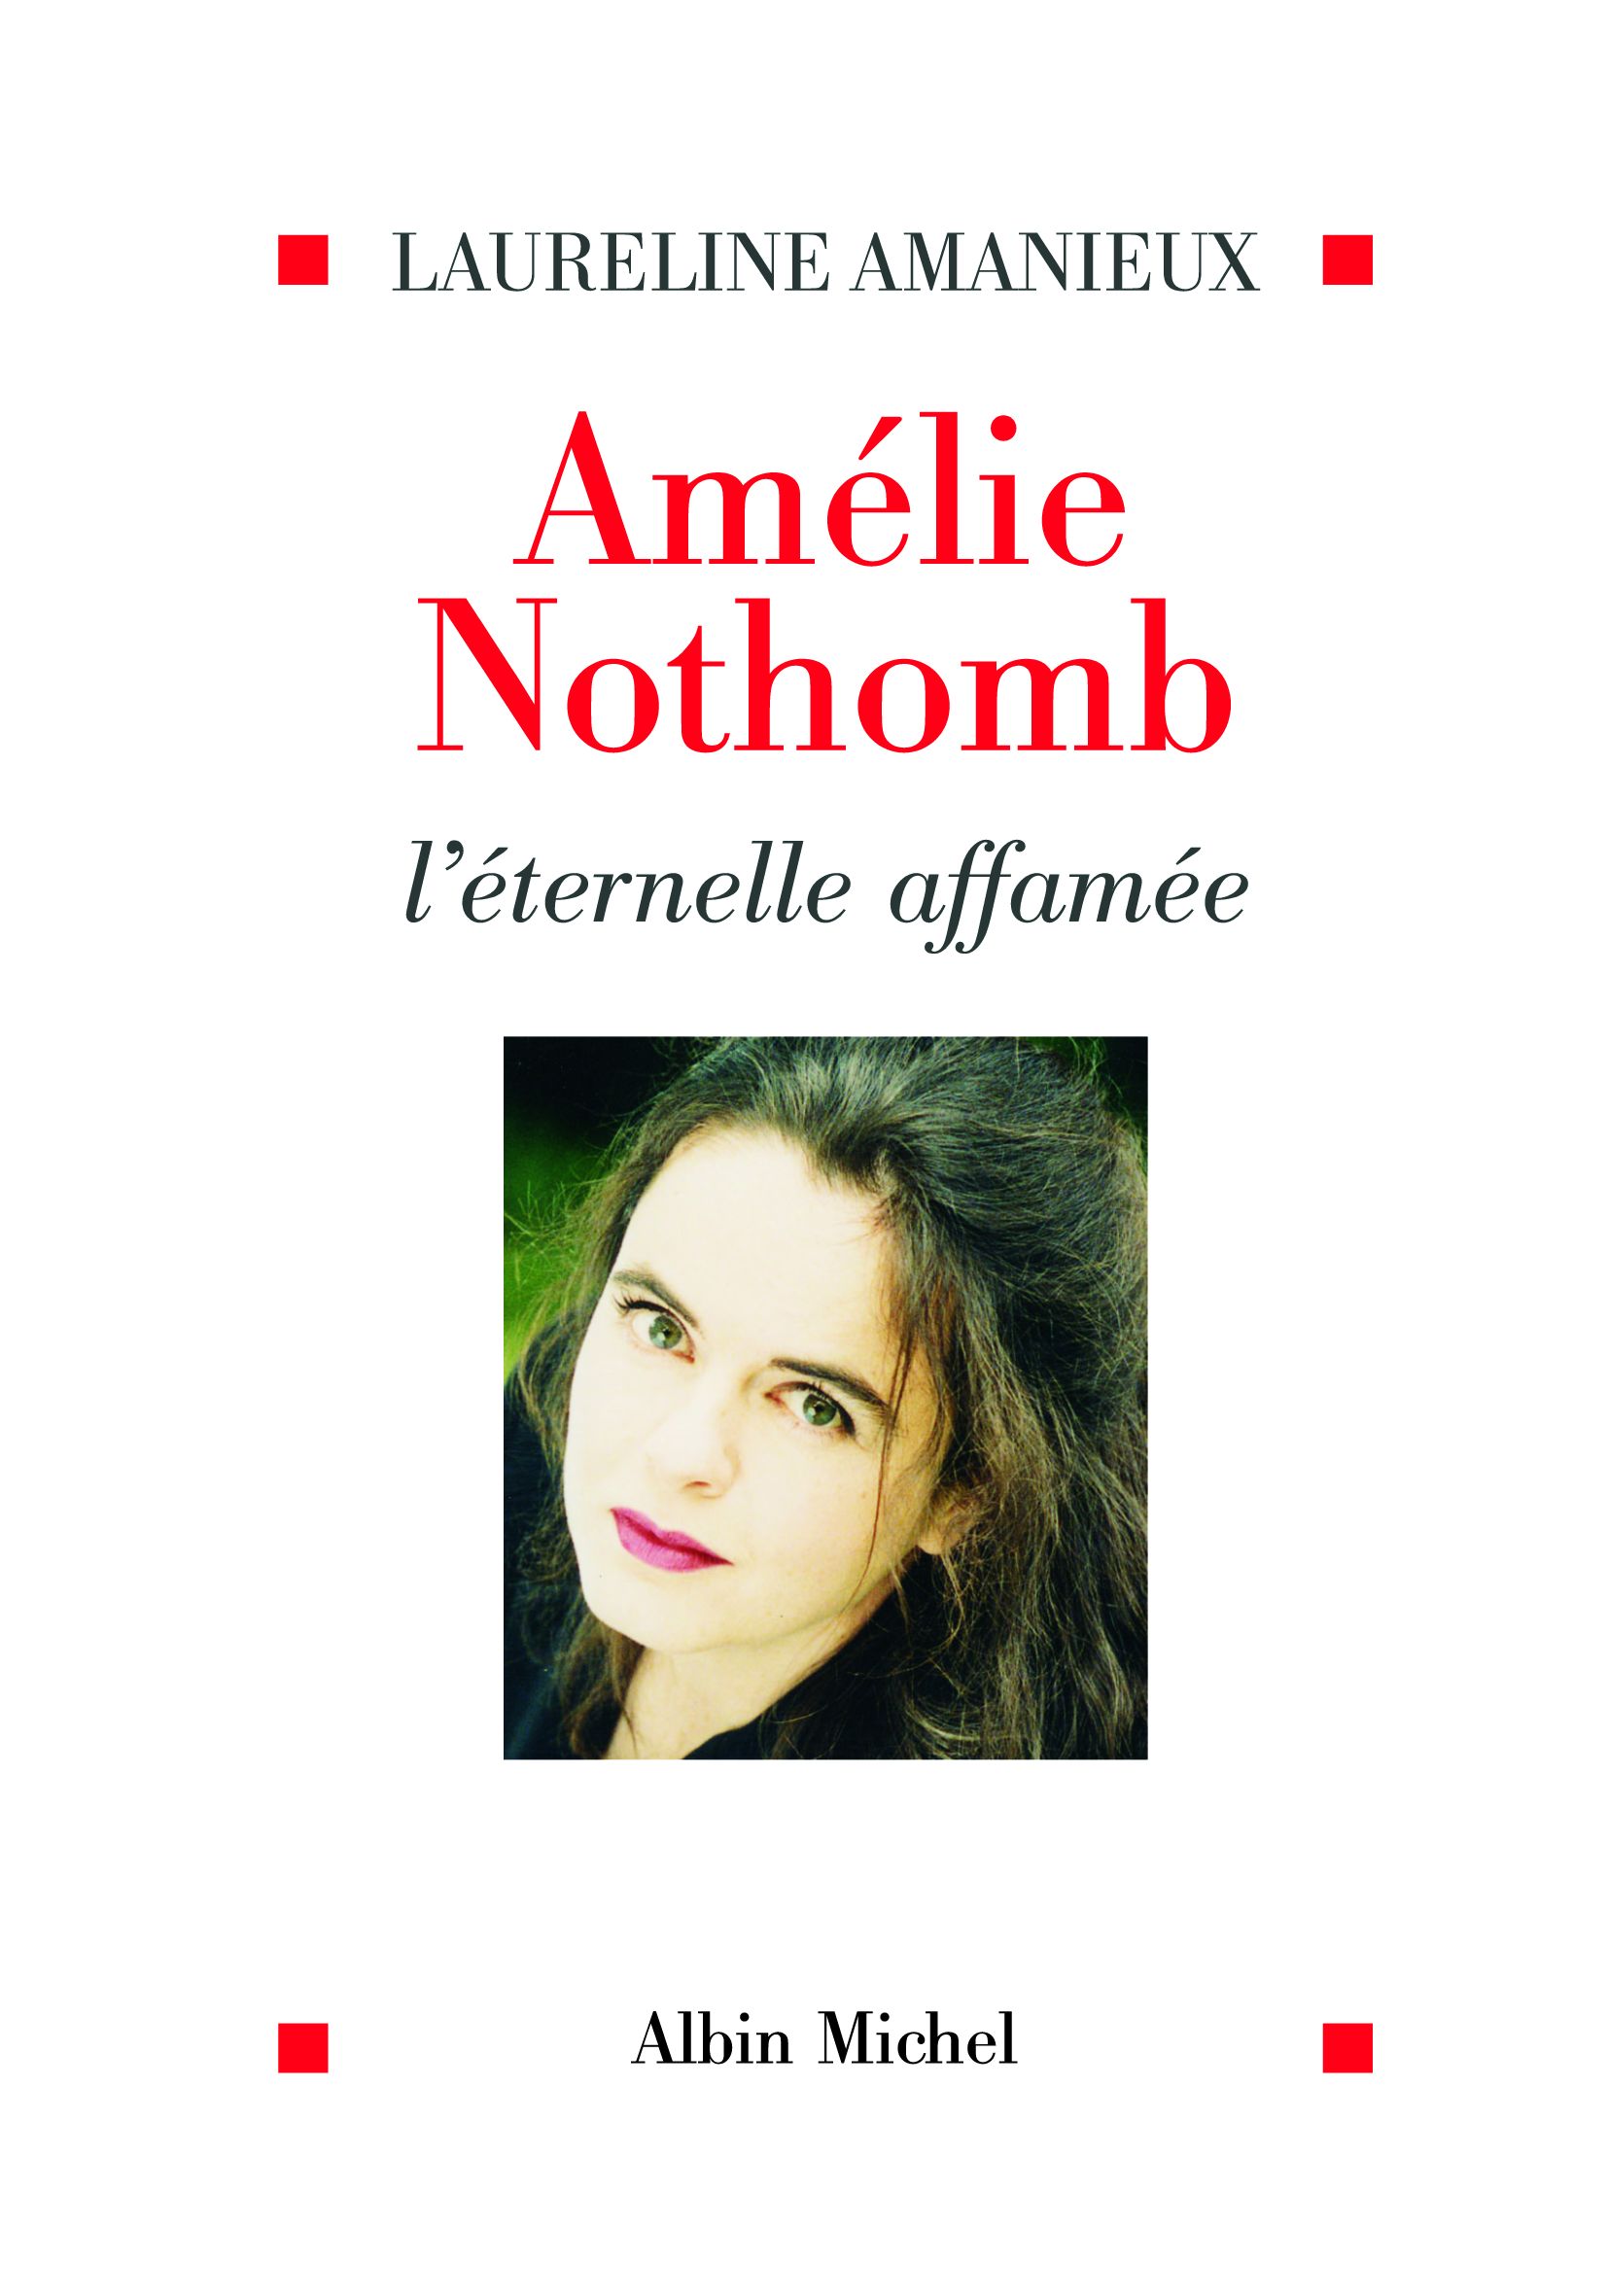 Couverture du livre Amélie Nothomb, l'éternelle affamée